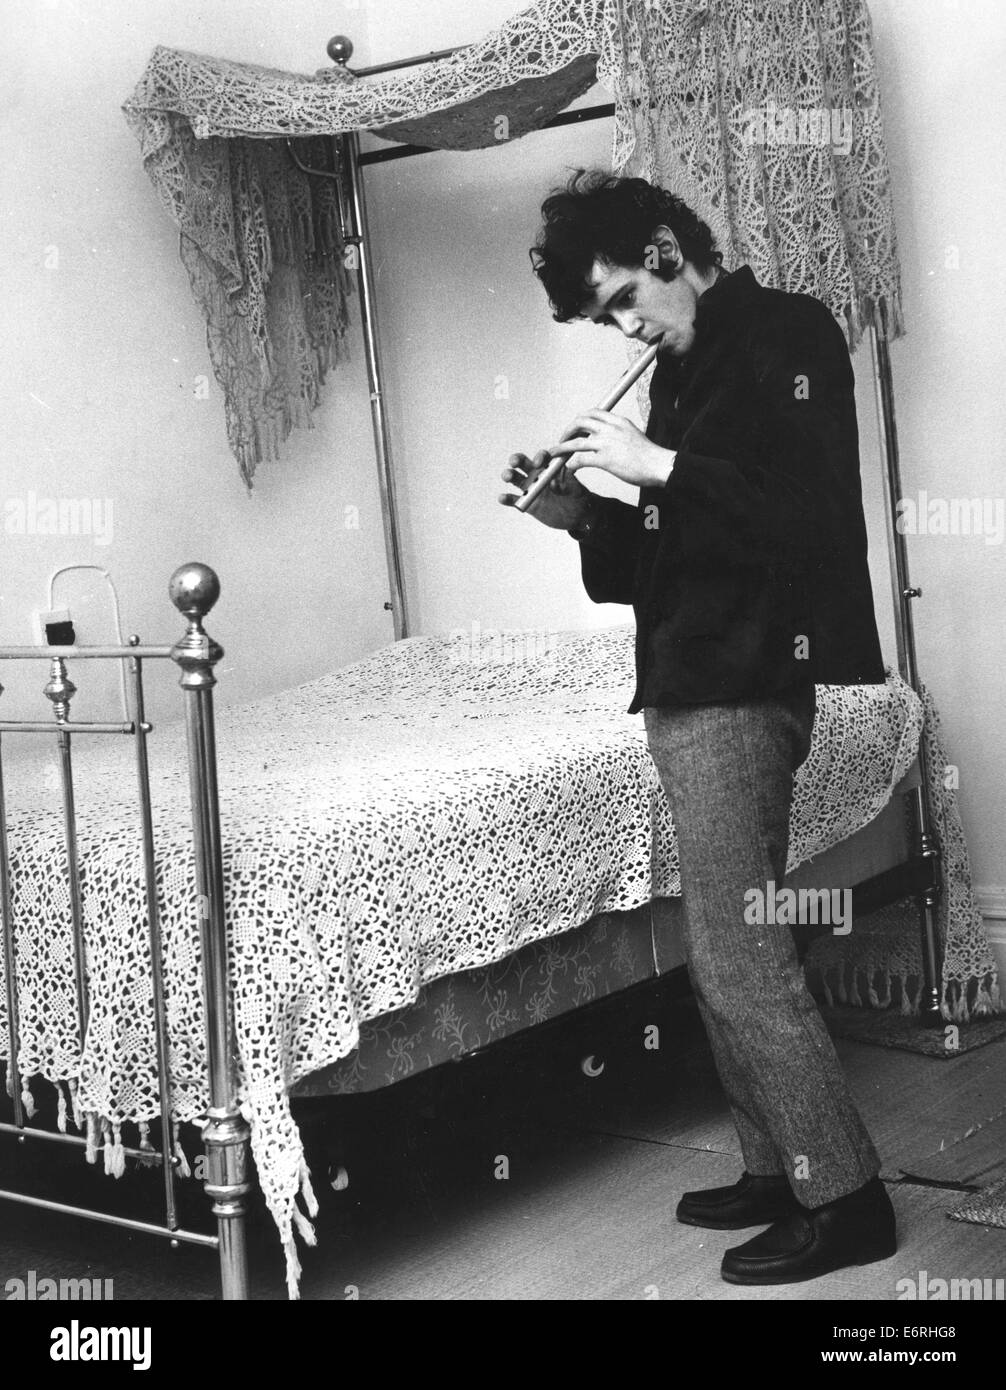 London, UK, UK. 2. Oktober 1970. DONOVAN (geb. DONOVAN PHILIPS LEITCH, 10. Mai 1946) ist eine schottische Sängerin, Songwriter und Gitarrist. Er entwickelte einen eklektischen und unverwechselbaren Stil, das Folk, Jazz, Pop, Psychedelia und Weltmusik (insbesondere Calypso) gemischt. Bild - Maida Vale, Paddington, London, England - Sänger Musiker DONOVAN, 19, entspannen in Maida Vale spielen eine volkstümliche Melodie auf einer Holzflöte Blasinstrument Blockflöte neben seinem viktorianischen Messingbett mit gehäkelter Spitze Baldachin. © KEYSTONE Pictures/ZUMAPRESS.com/Alamy Live-Nachrichten Stockfoto